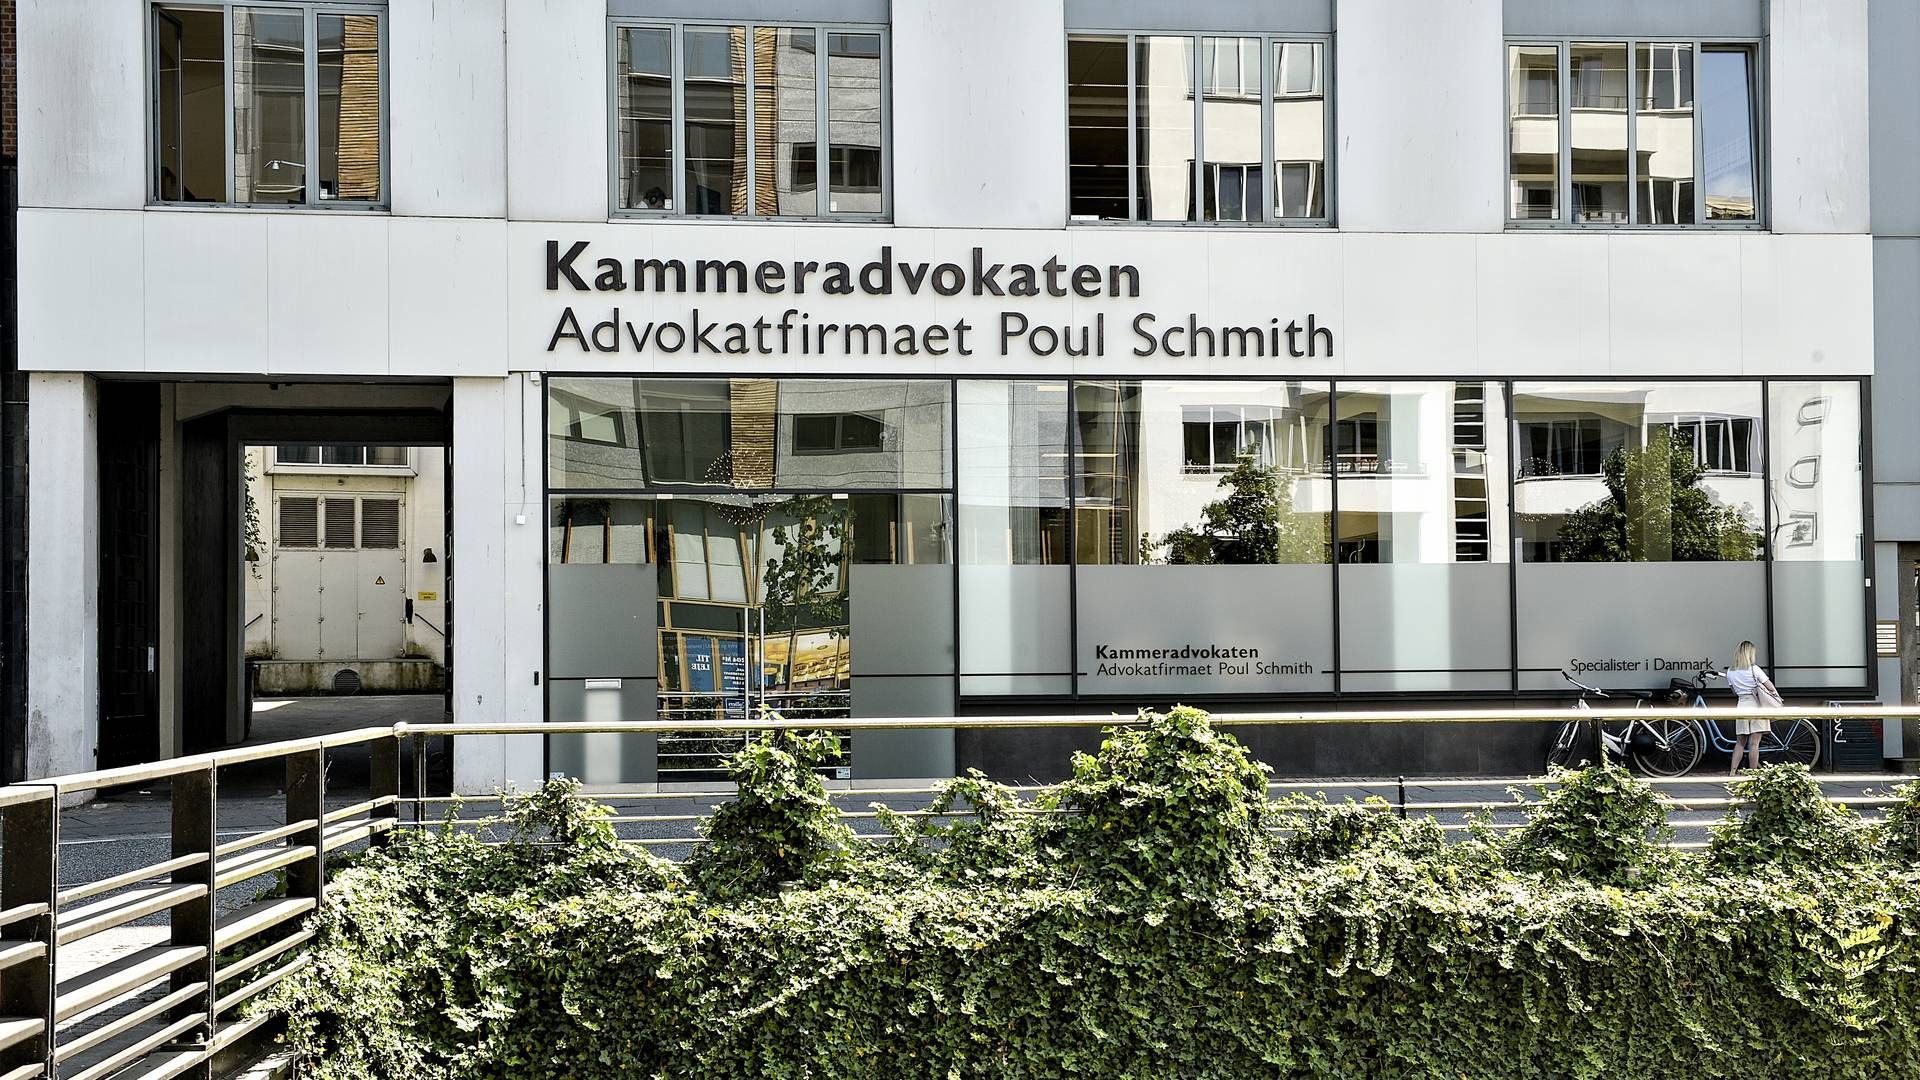 Konkurrencerådet anbefaler at øge konkurrencen om statens advokatopgaver, som Advokatfirmaet Poul Schmith sidder tungt på i kraft af sin rolle som kammeradvokat. | Foto: Ernst van Norde